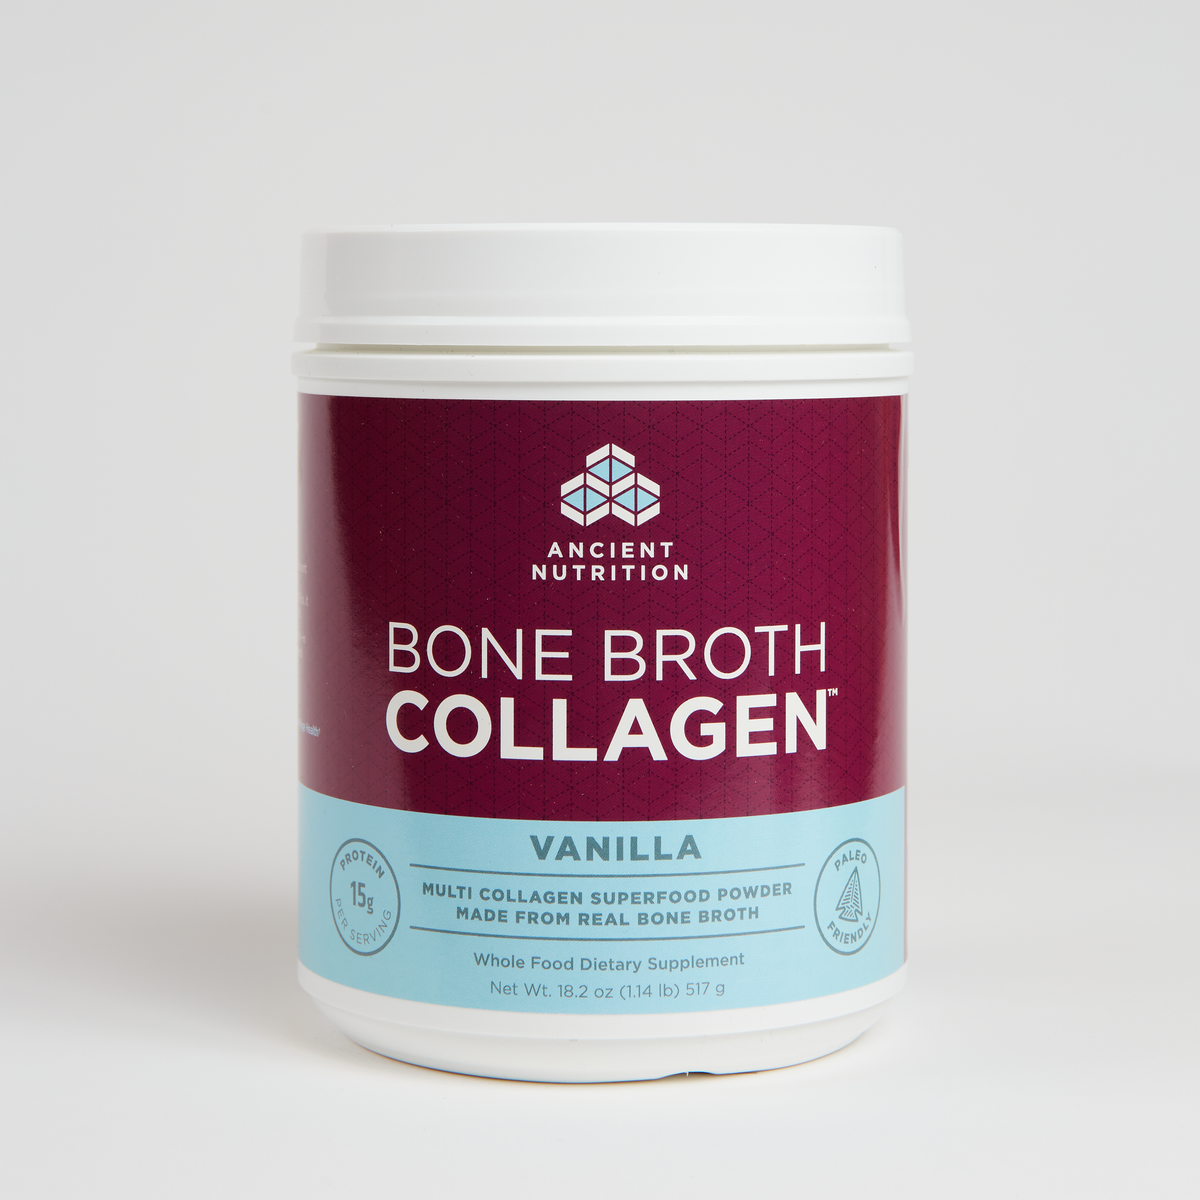 Ancient Nutrition Bone Broth Collagen - Vanilla - 517 g